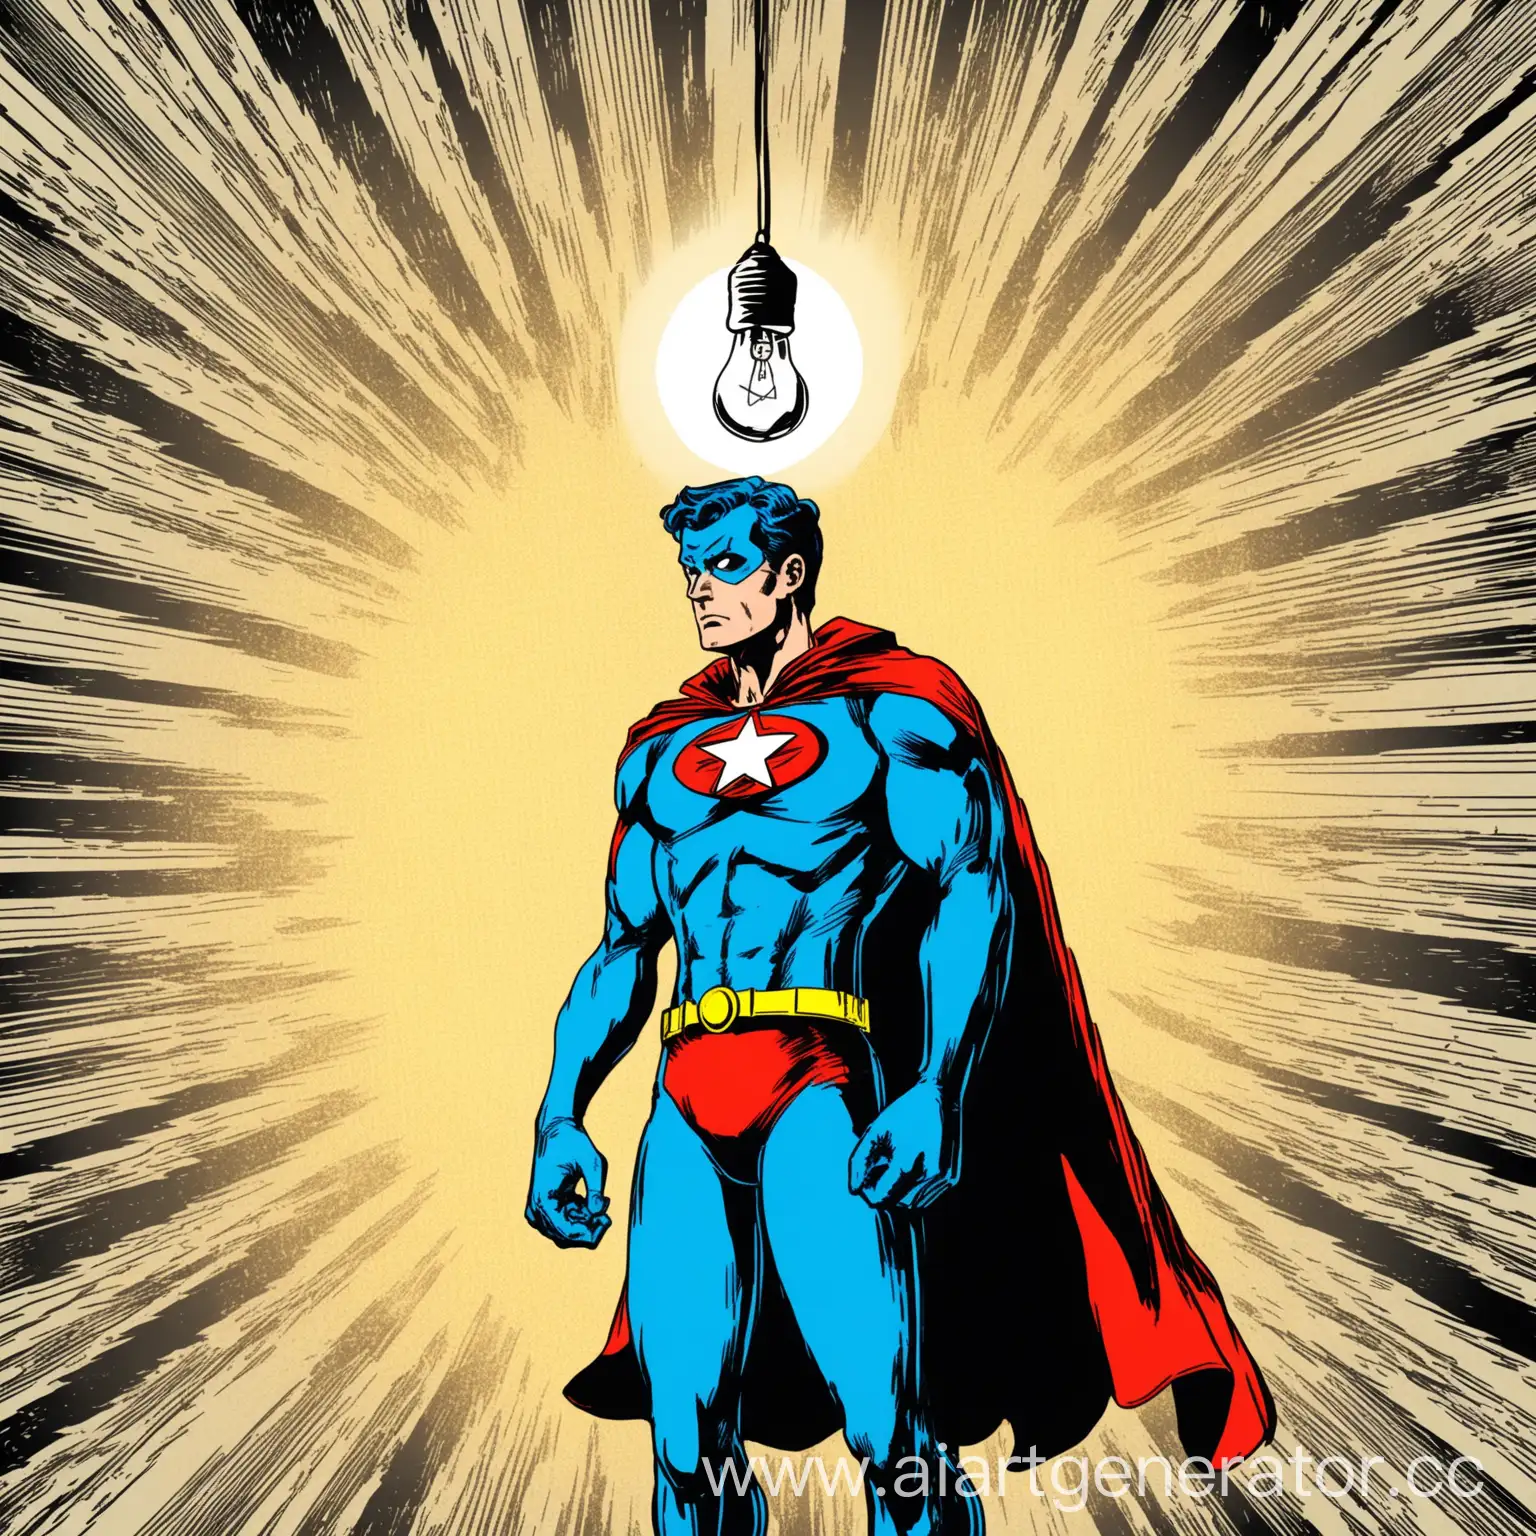 Супергерой задумчиво смотрит на лампочку, в стиле старых комиксов